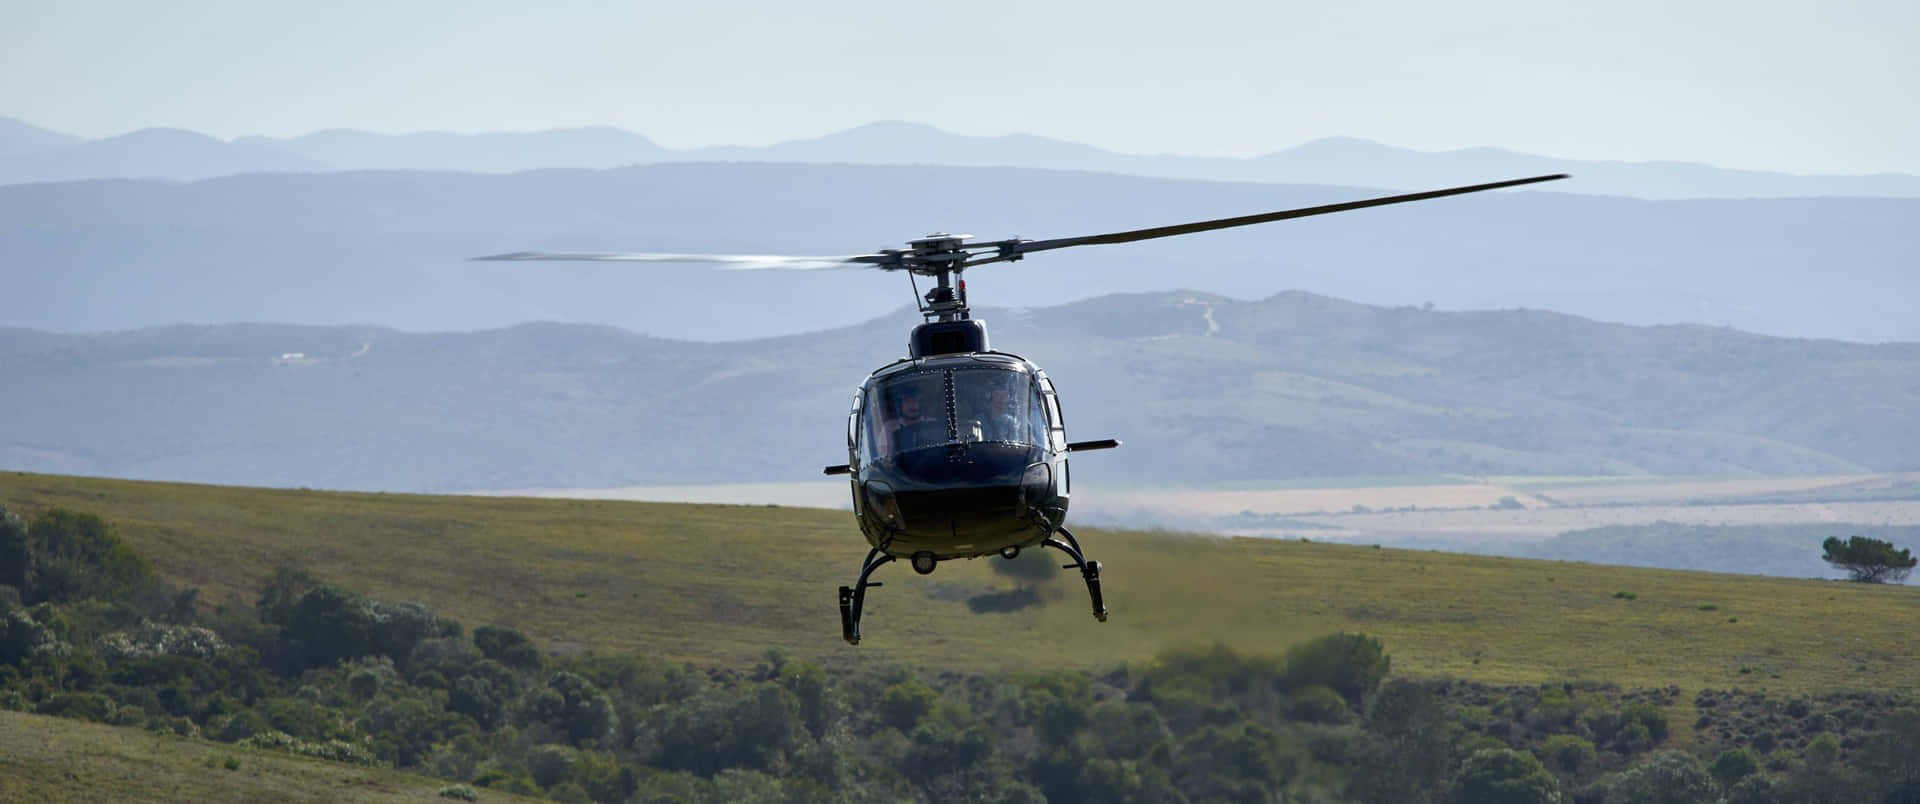 Flygandehelikoptrar I 3440x1440p Upplösning, Sett Från Luften.